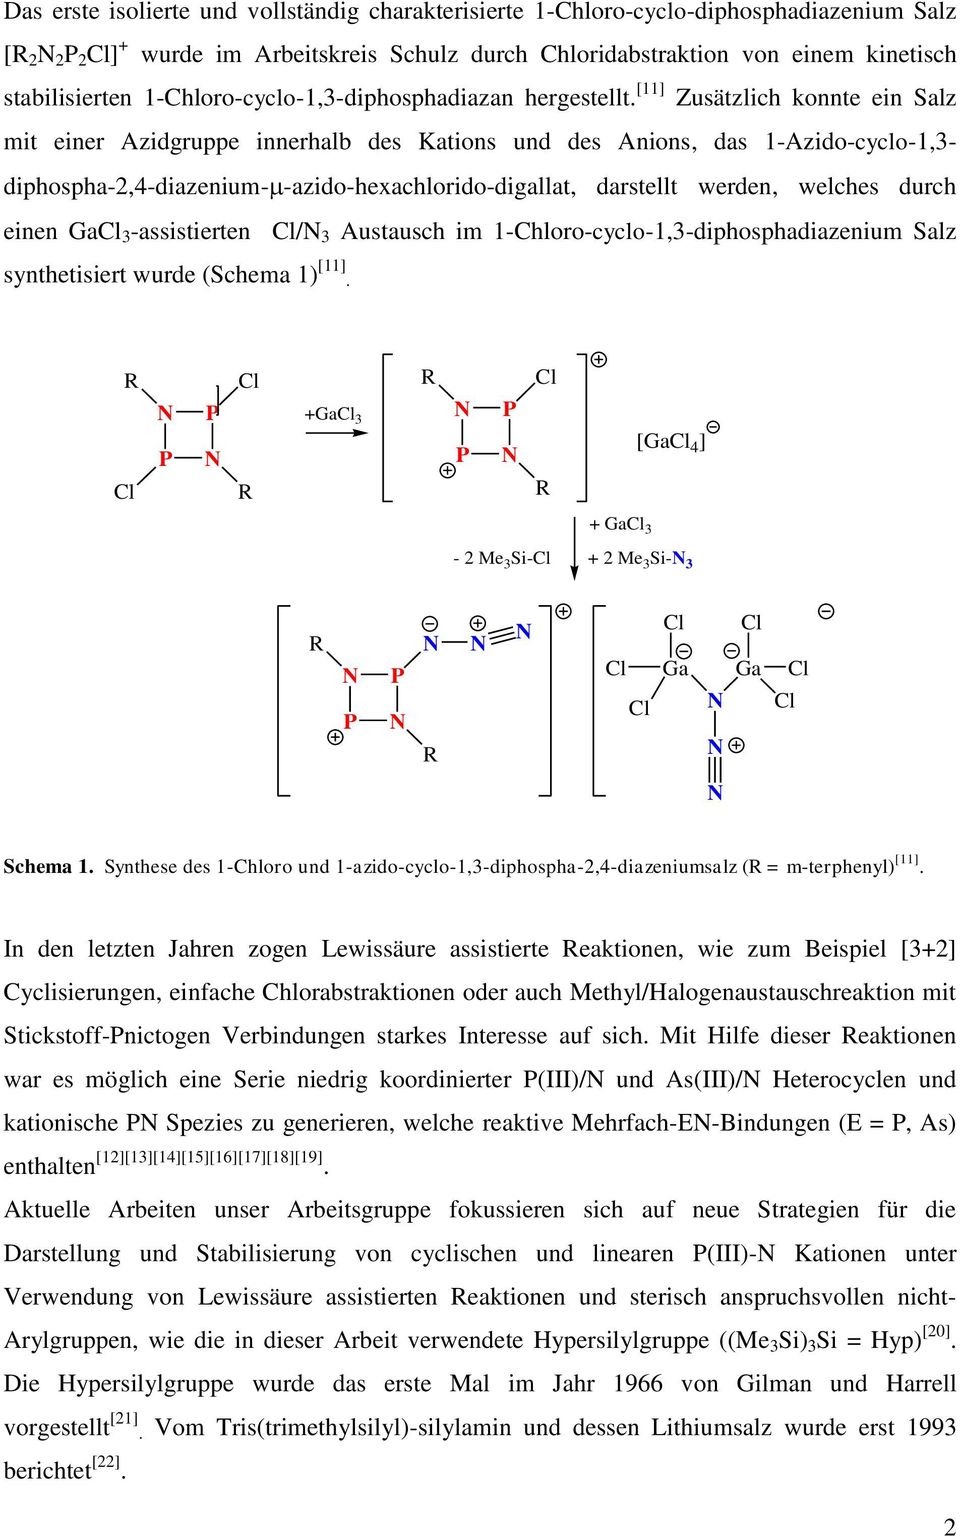 [11] Zusätzlich konnte ein Salz mit einer Azidgruppe innerhalb des Kations und des Anions, das 1-Azido-cyclo-1,3- diphospha-2,4-diazenium- -azido-hexachlorido-digallat, darstellt werden, welches